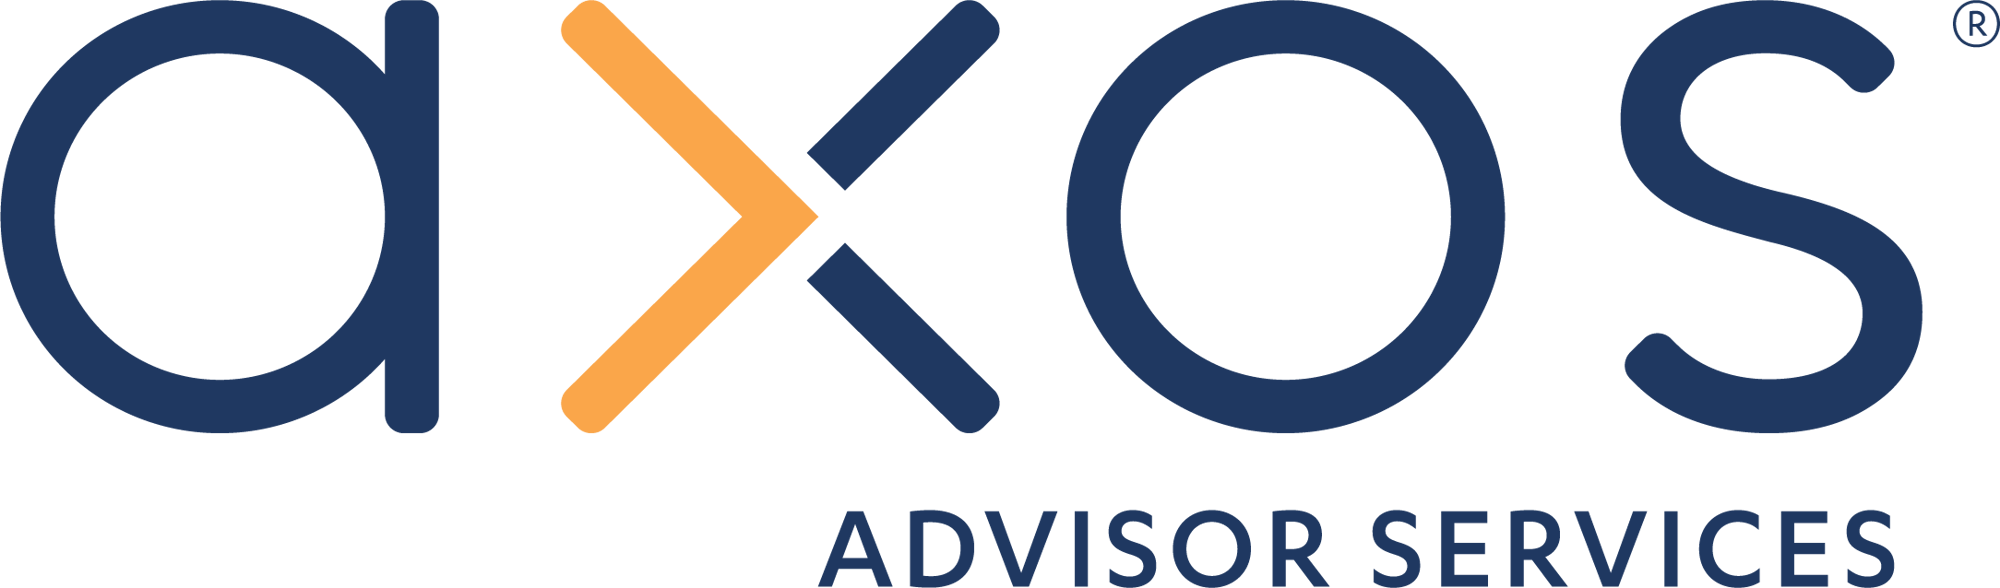 Axos Advisor Services